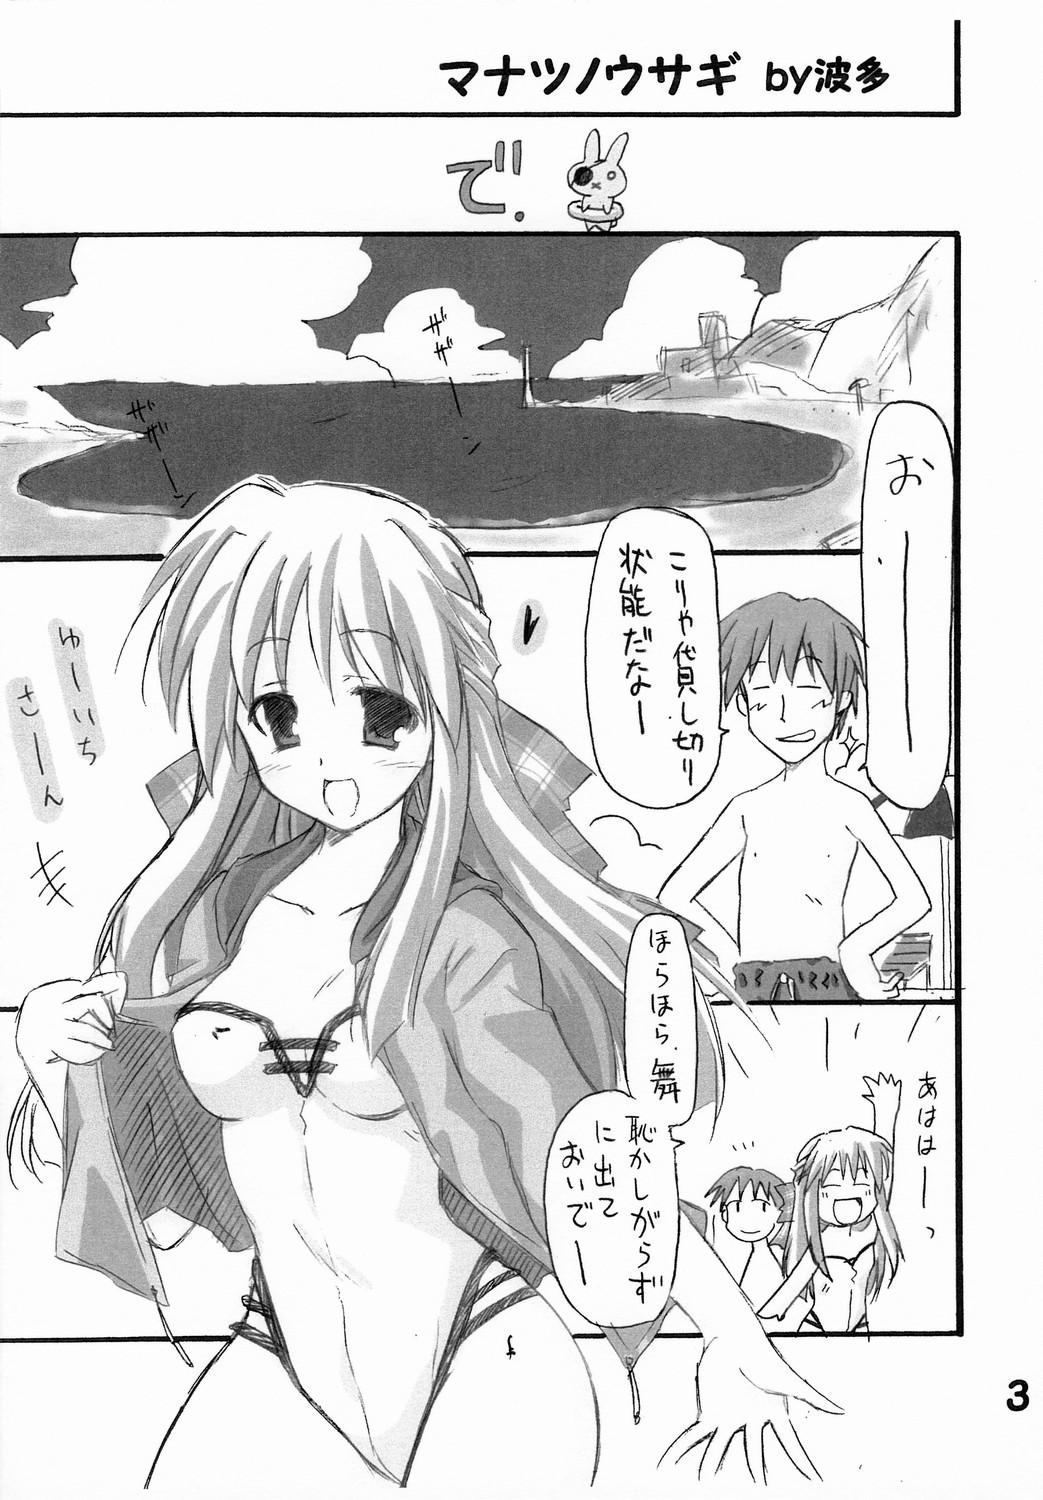 Stepdaughter Haru na no ni - Manatsu no Usagi - Kanon Free Blowjobs - Page 4